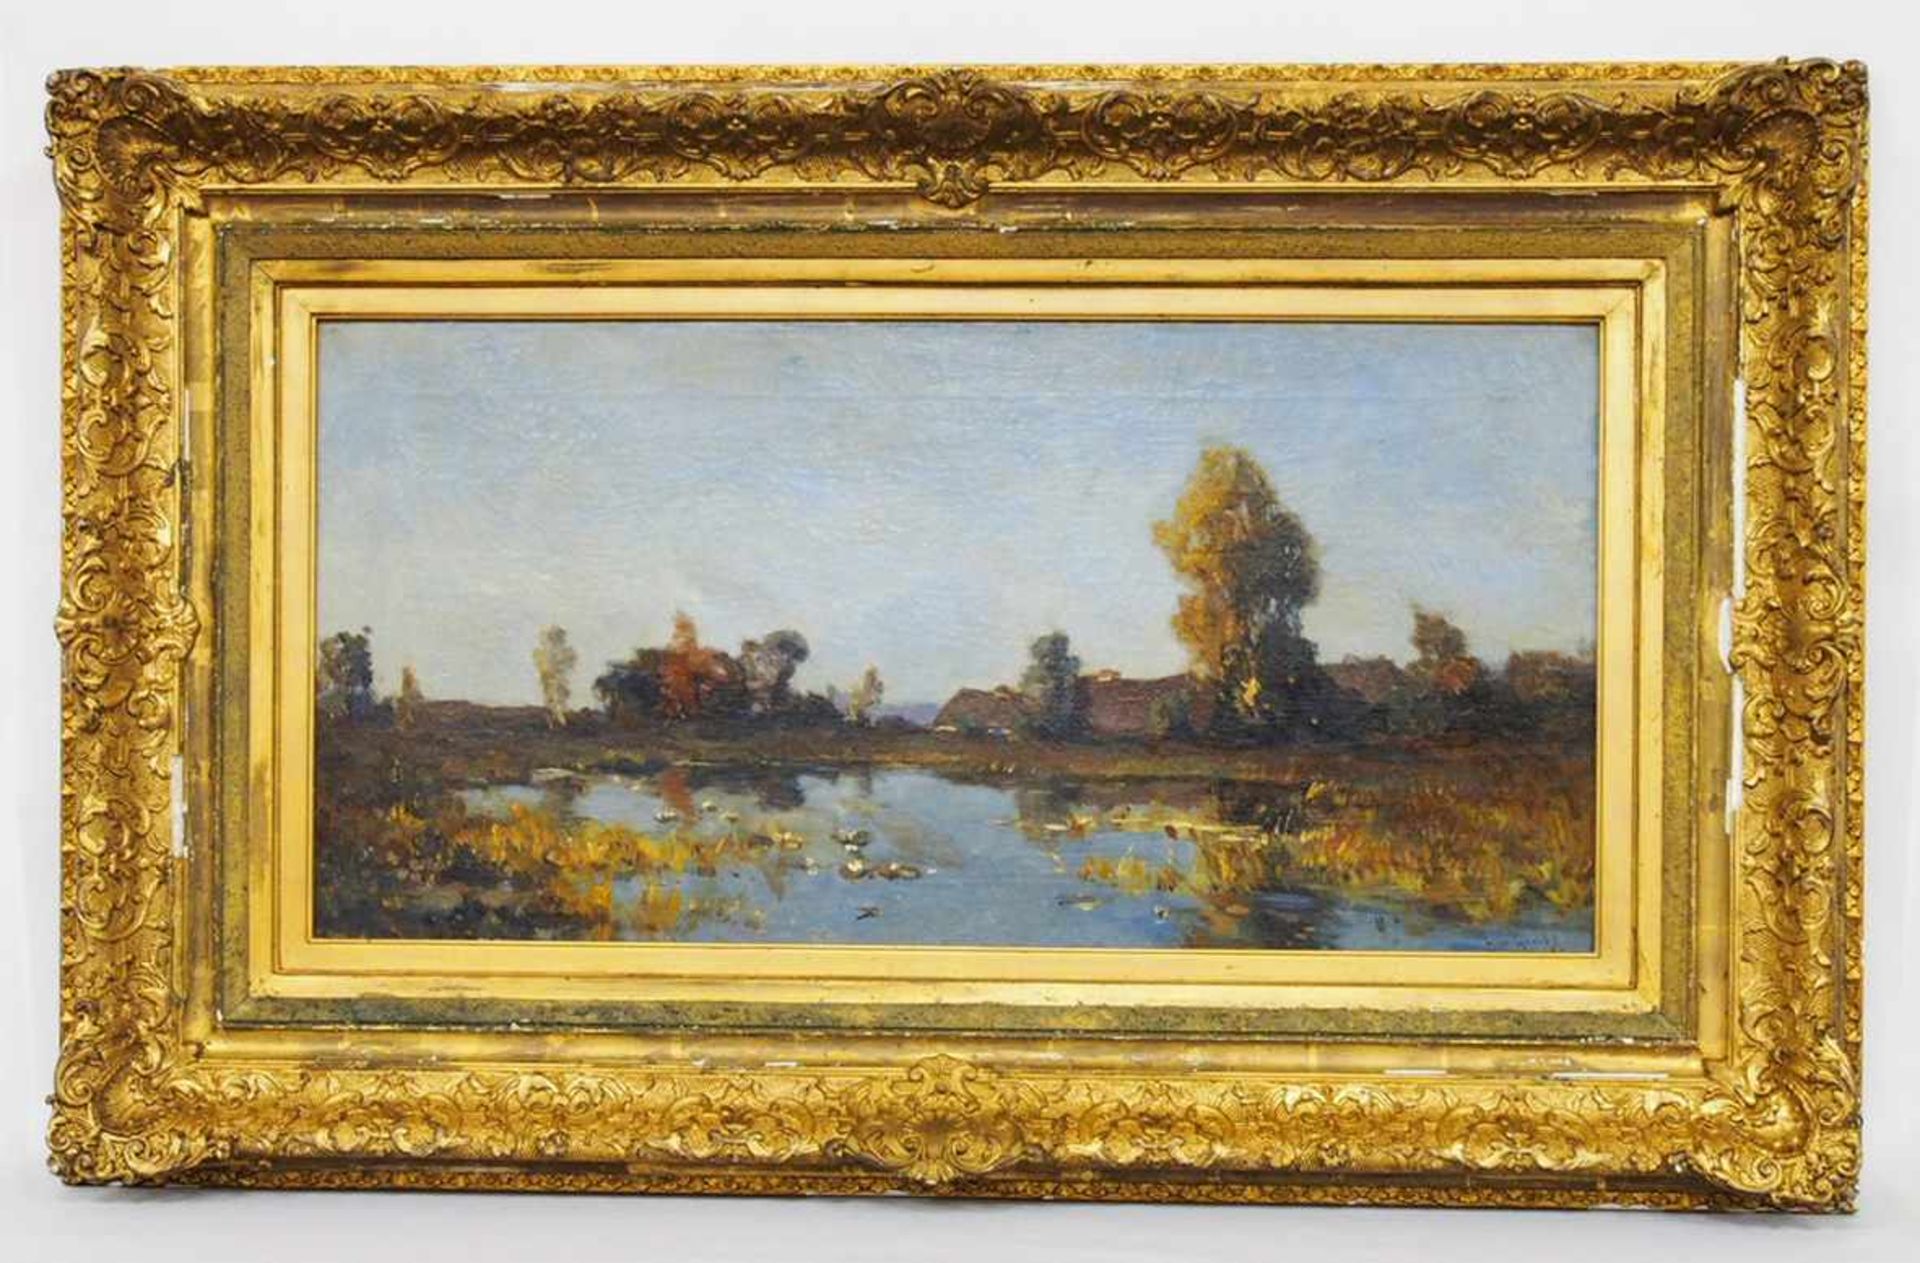 GROOT, Gerardus de1878-1947Hof in PolderlandschaftÖl auf Leinwand, 40 x 79 cm, signiert unten - Bild 2 aus 2